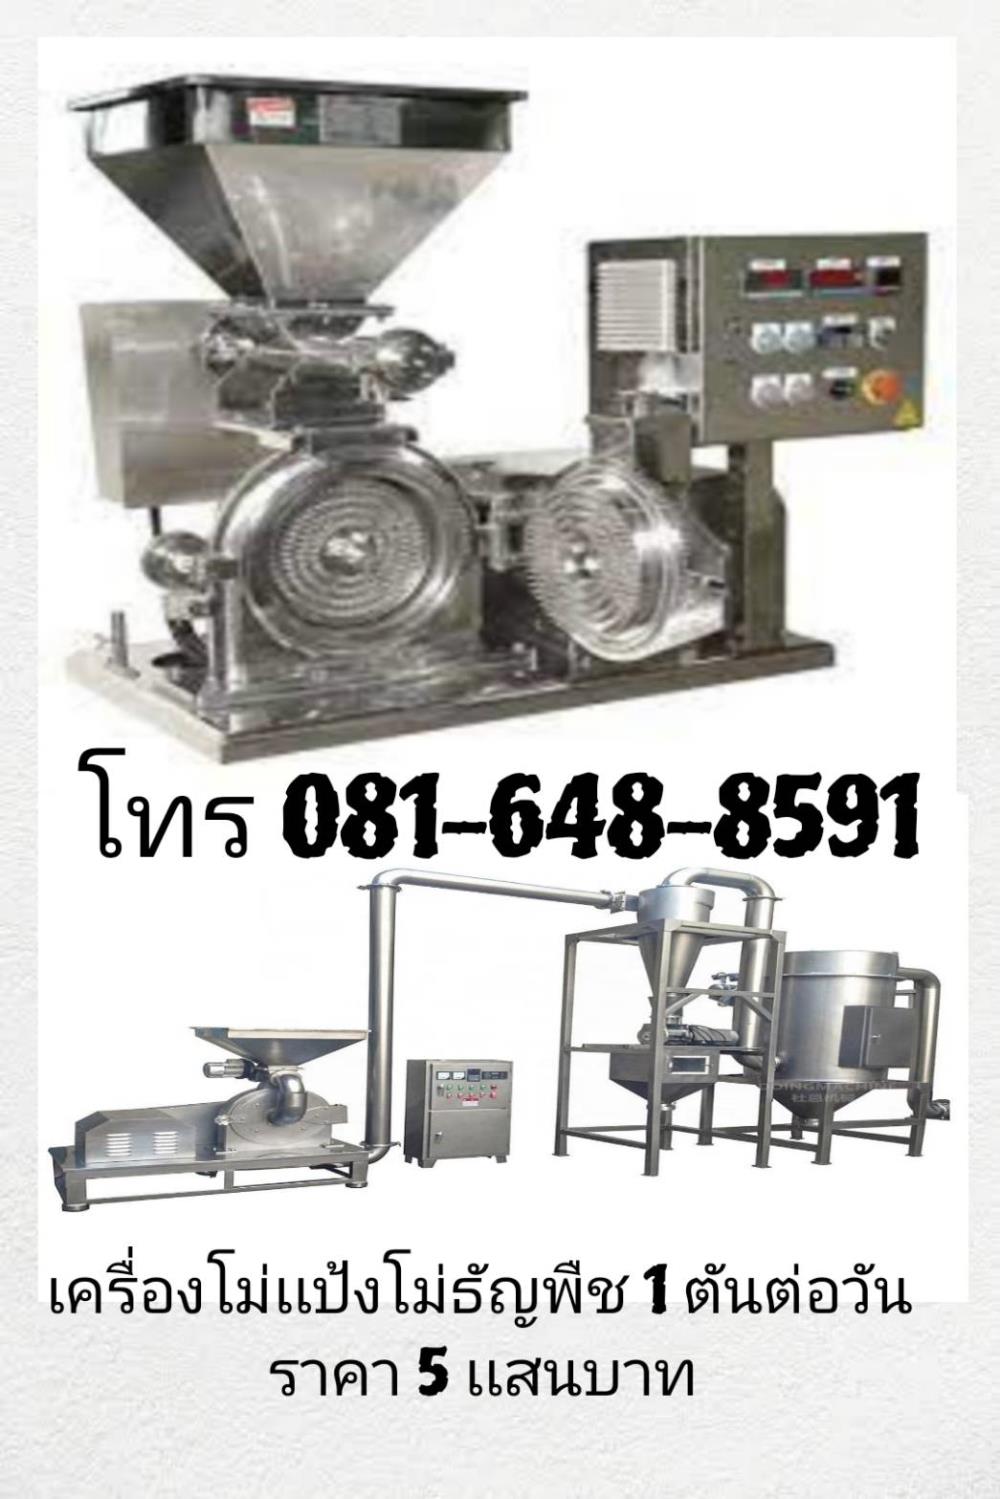 เครื่องโม่แป้ง โม่ธัญพืช,เครื่องโม่แป้ง เครื่องโม่ข้าว เครื่องโม่ถั่ว เครื่องโม่ธัญพืช ,,Machinery and Process Equipment/Process Equipment and Components